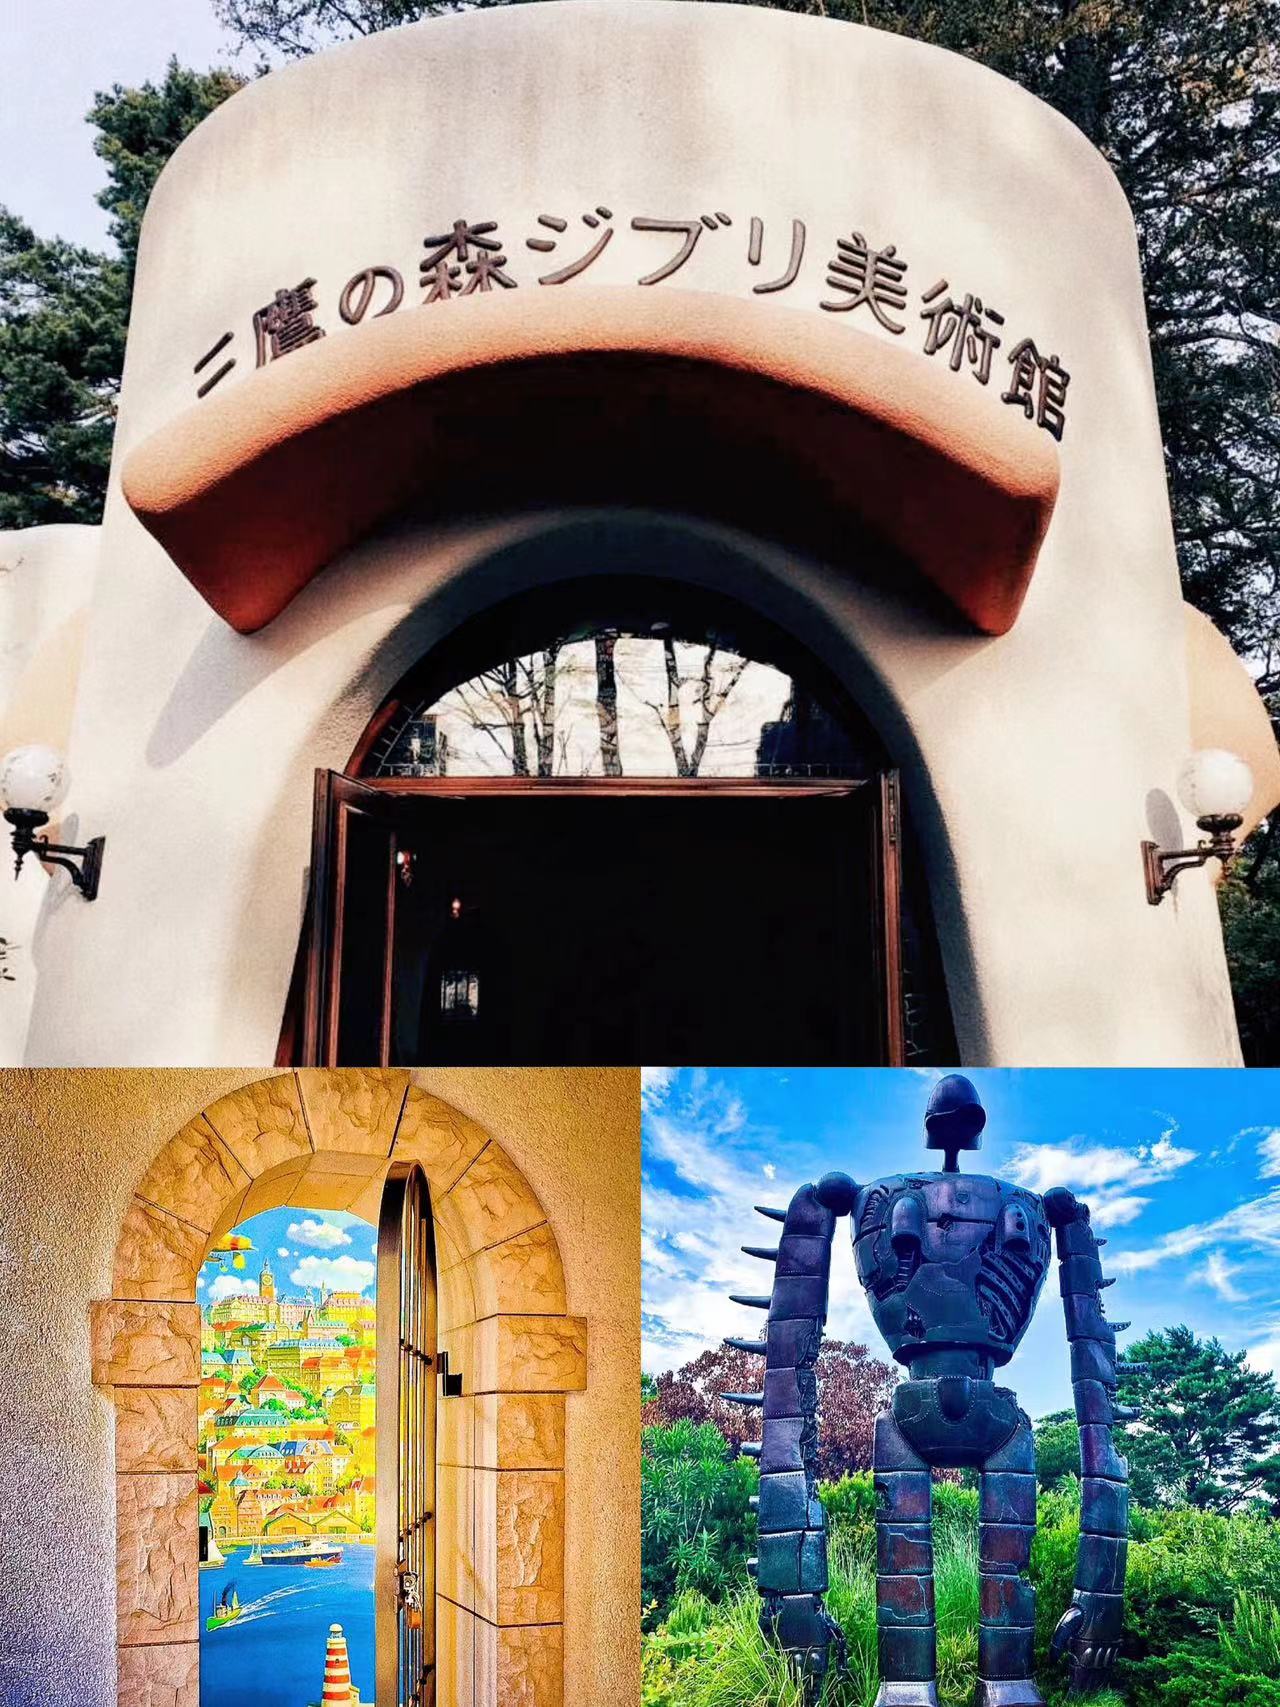 Tokyo｜Mitaka Mori Ghibli Museum & Inokashira Park Walking Tour